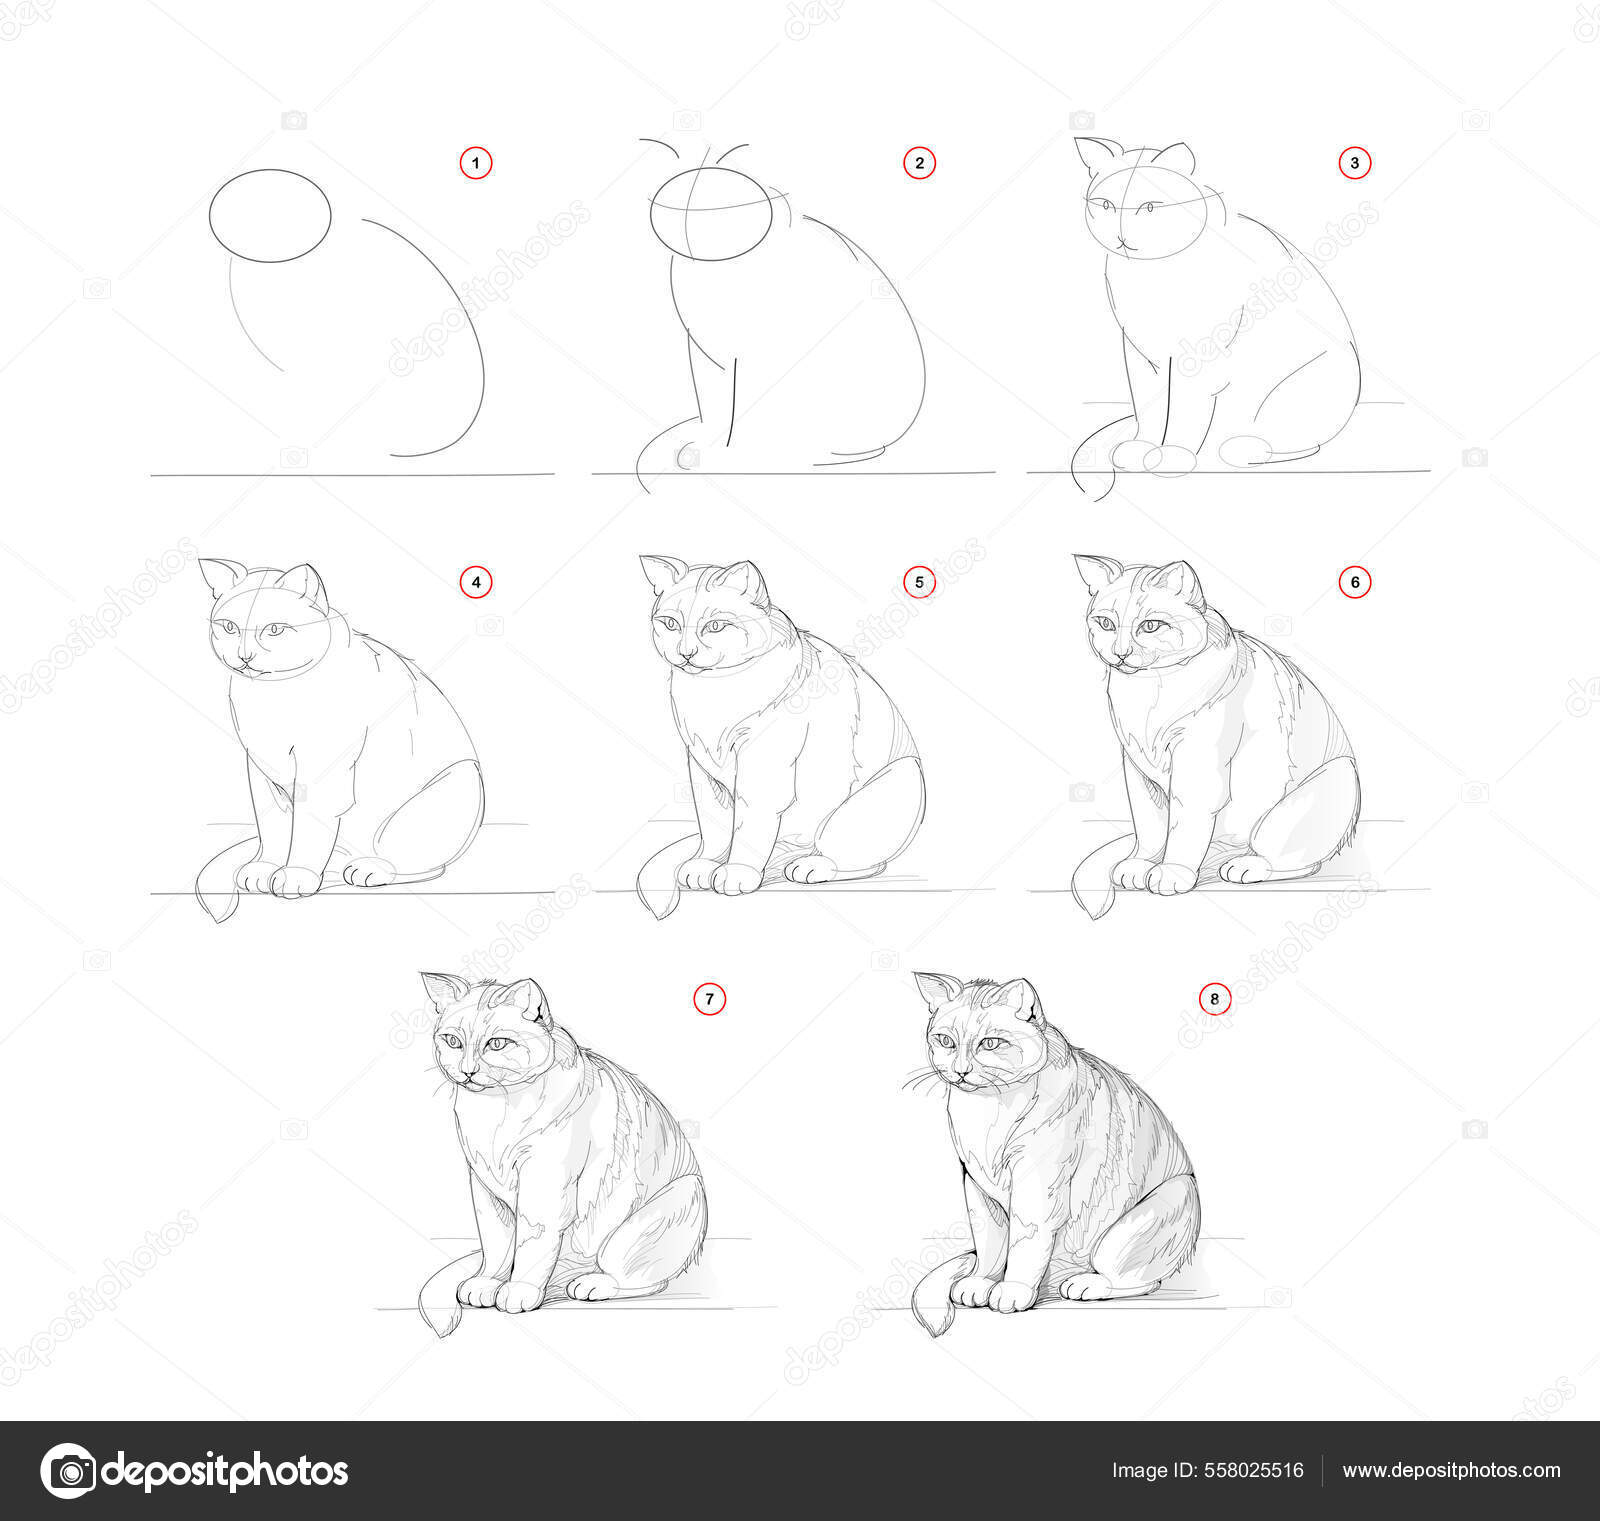 Como desenhar um gato de desenho animado